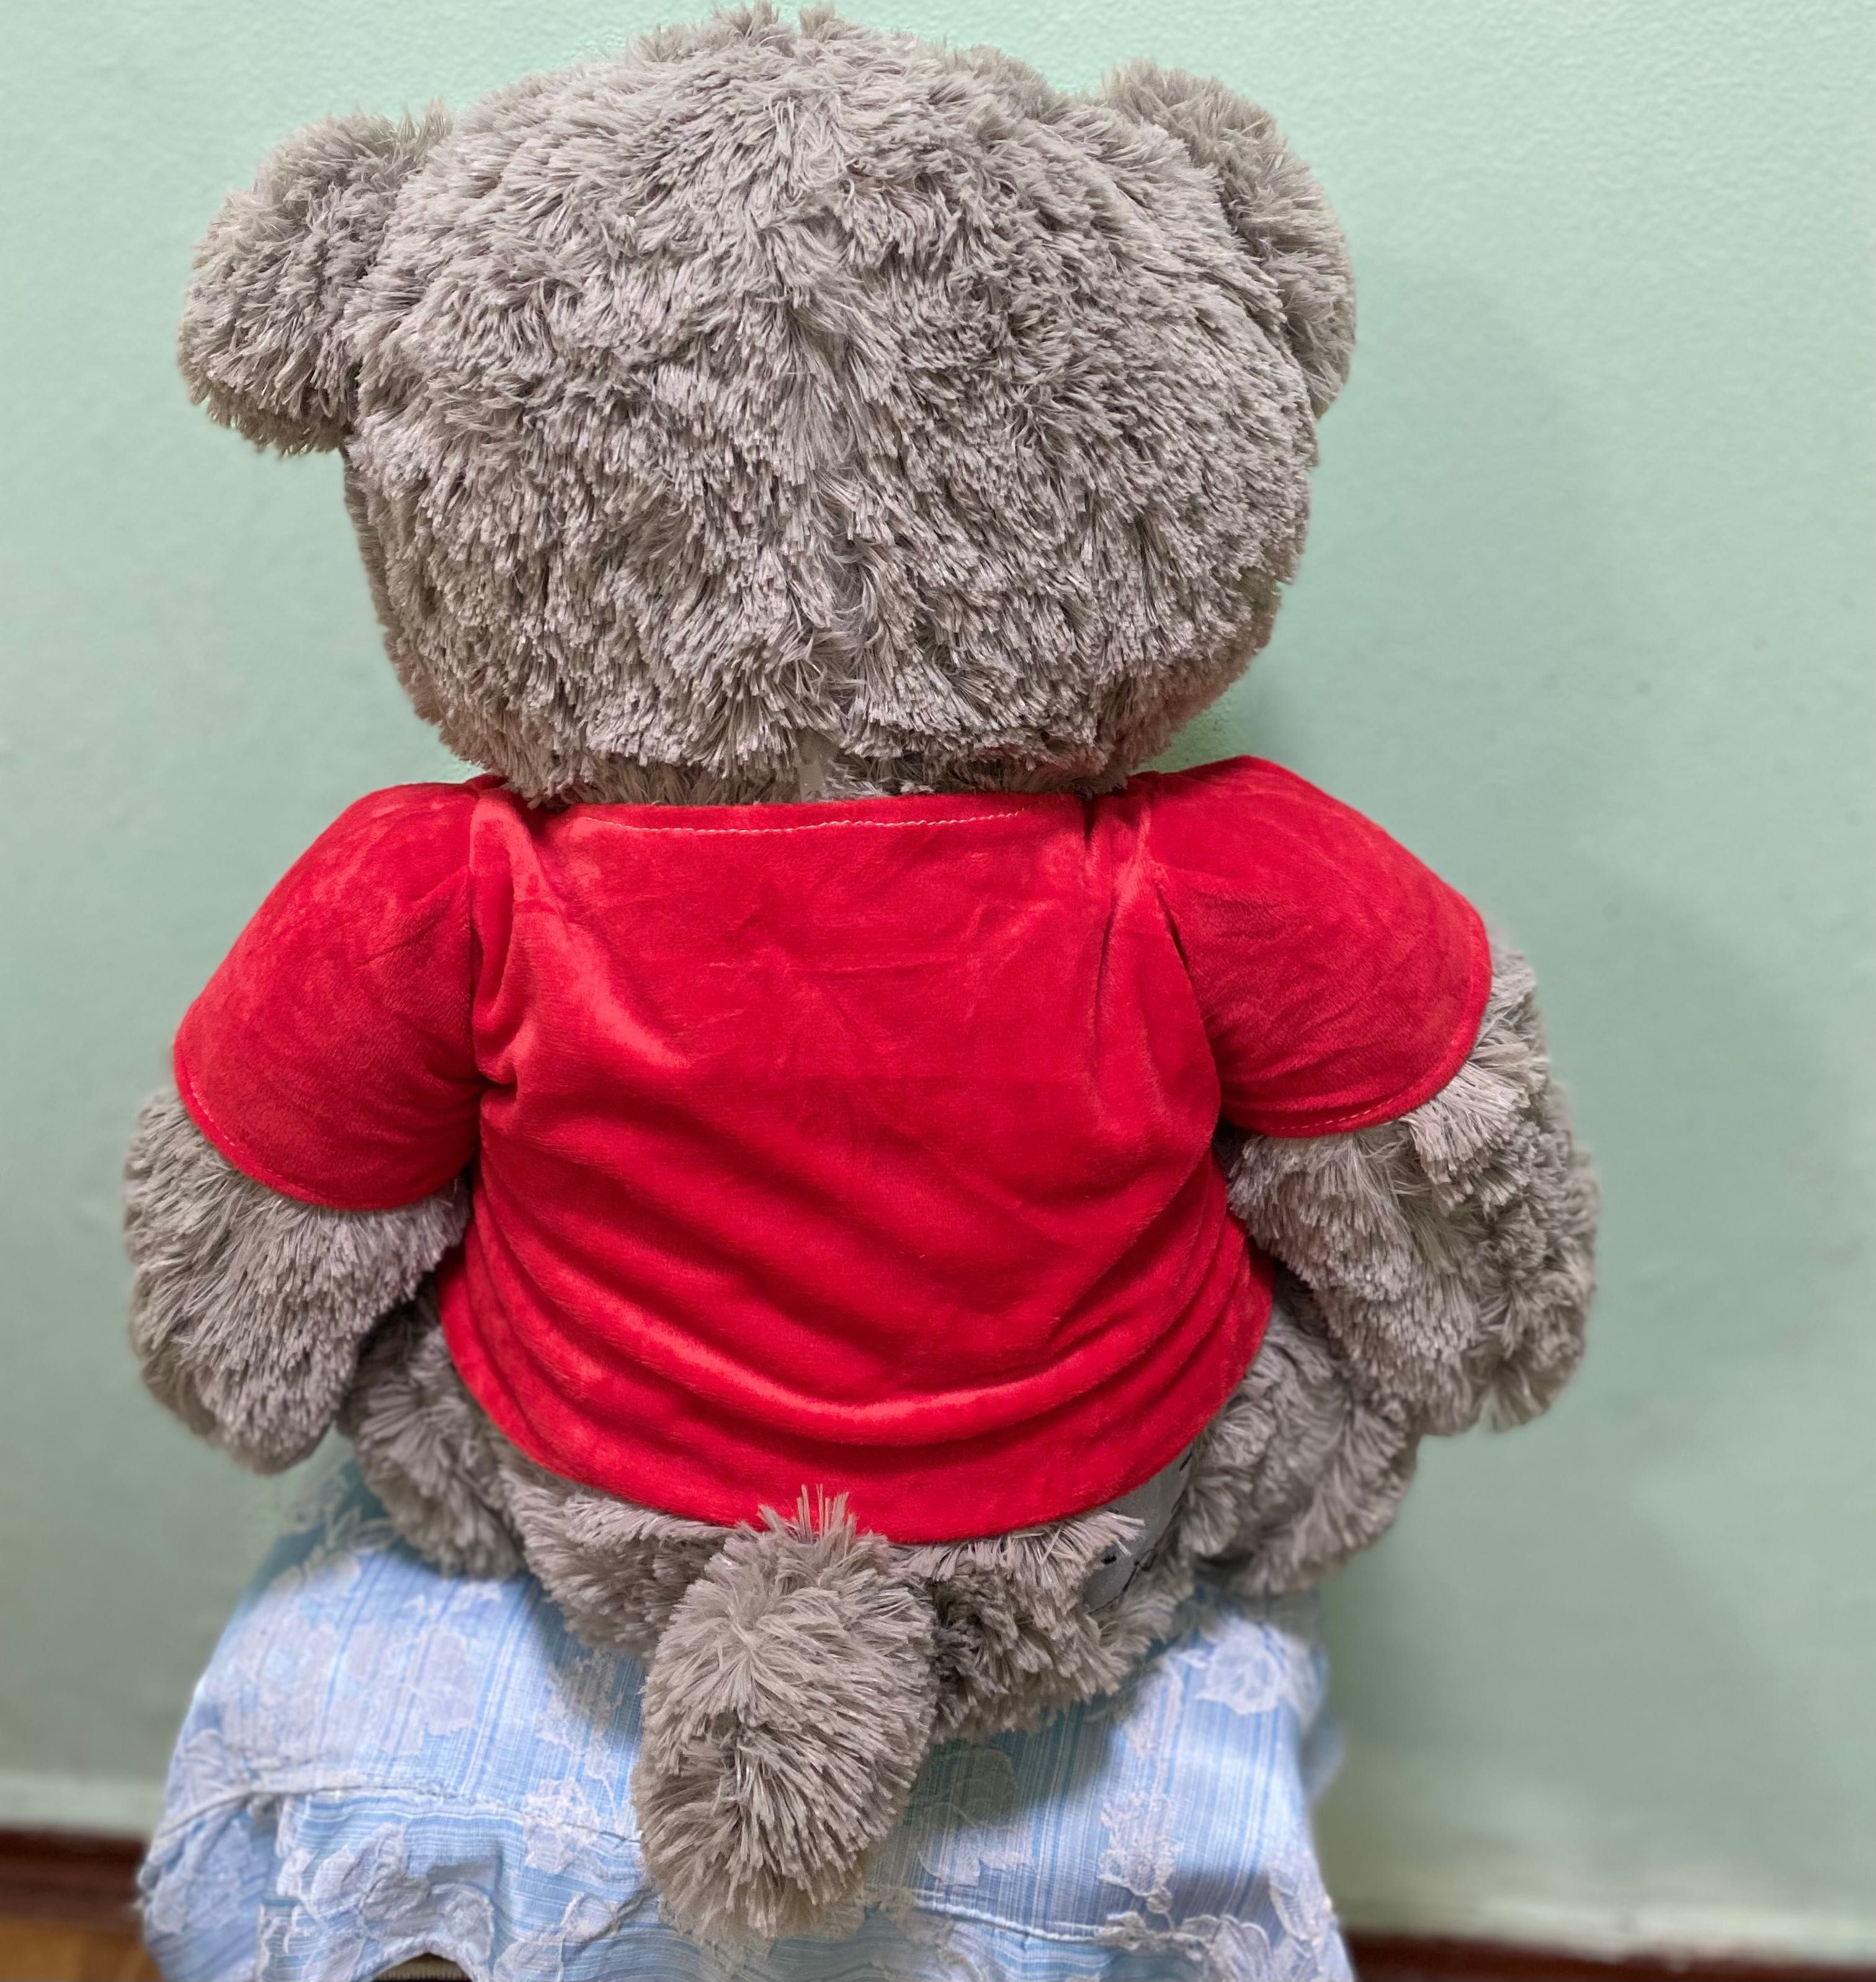 Мягкая игрушка мишка Тедди, в одежде.